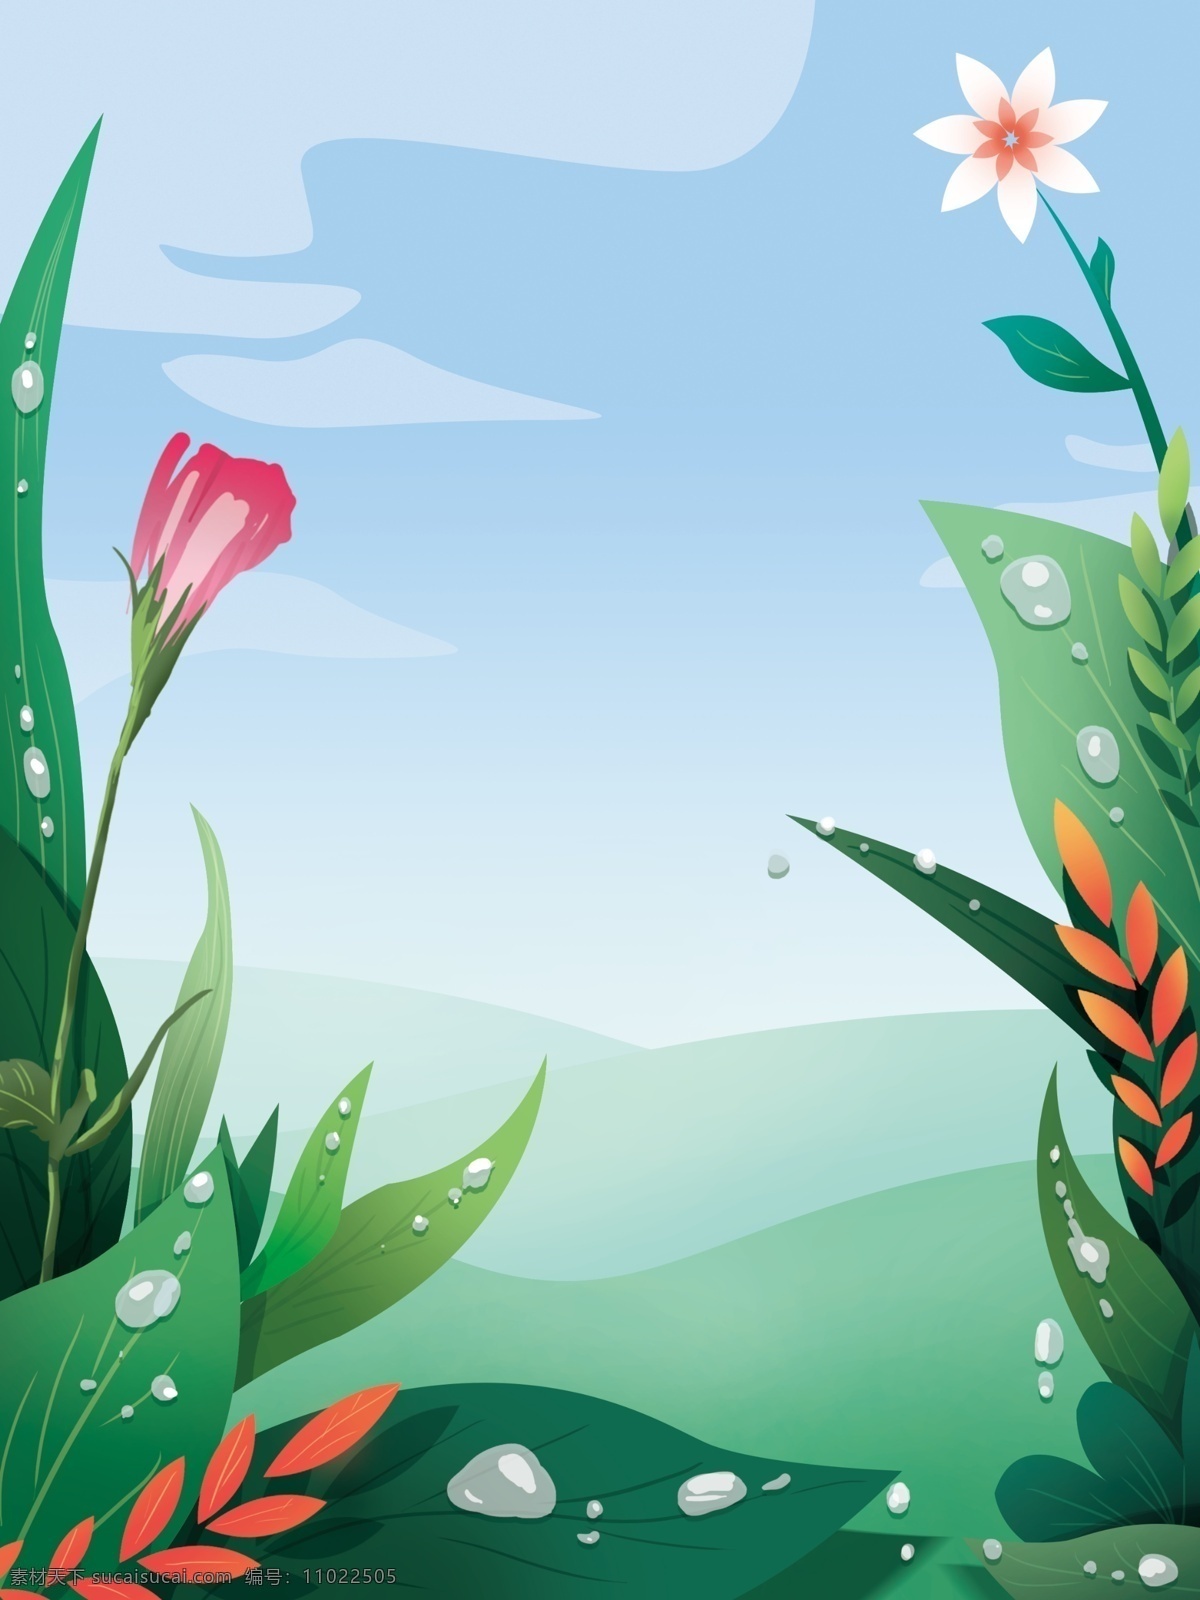 创意 唯美 小 清晰 植物 花卉 背景 绿色背景 治愈系背景 插画背景 植物背景 树林背景 蓝天白云 草地背景